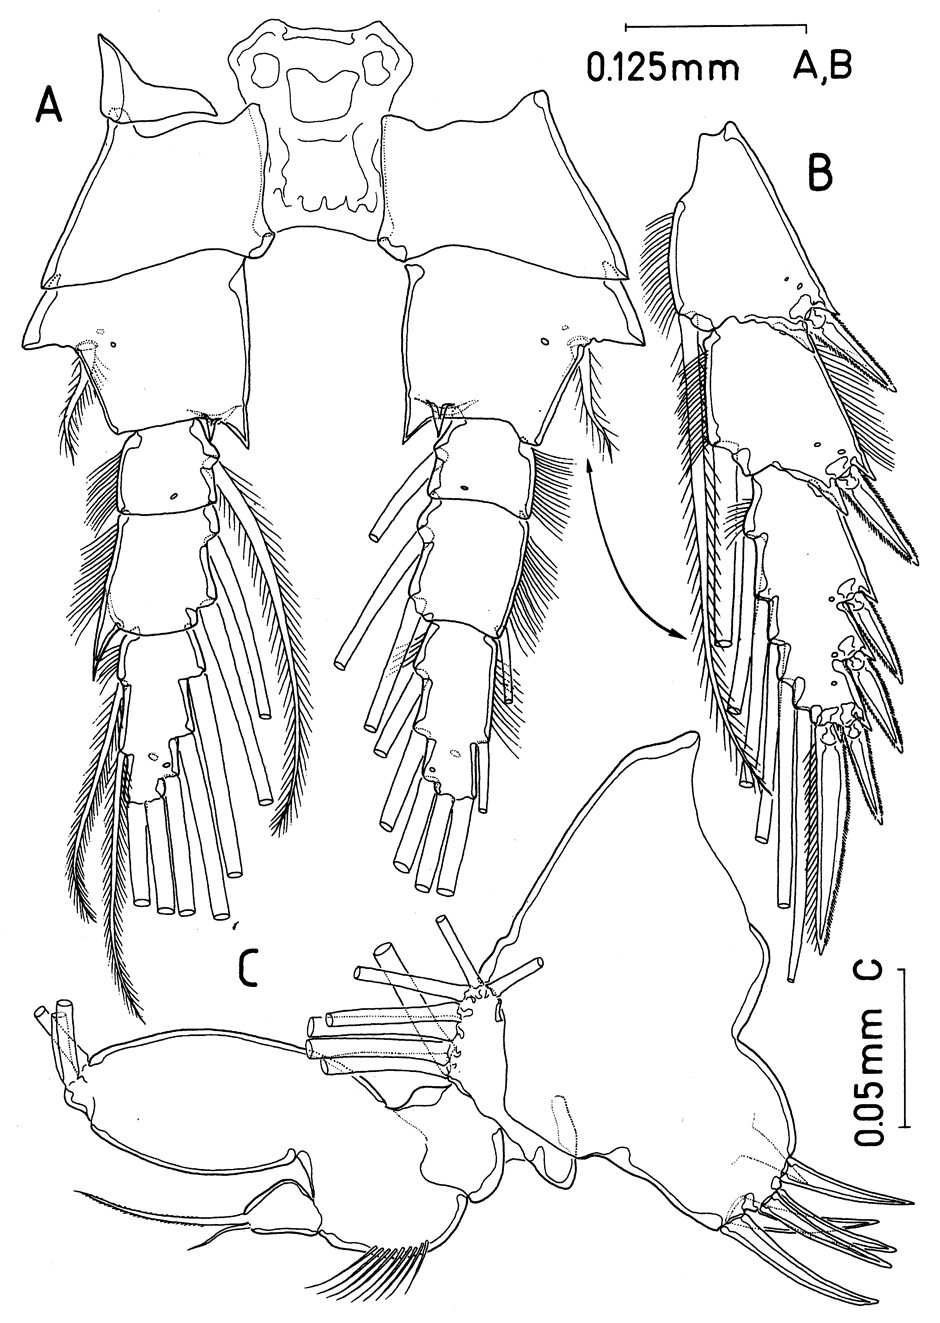 Espèce Paramisophria bathyalis - Planche 7 de figures morphologiques